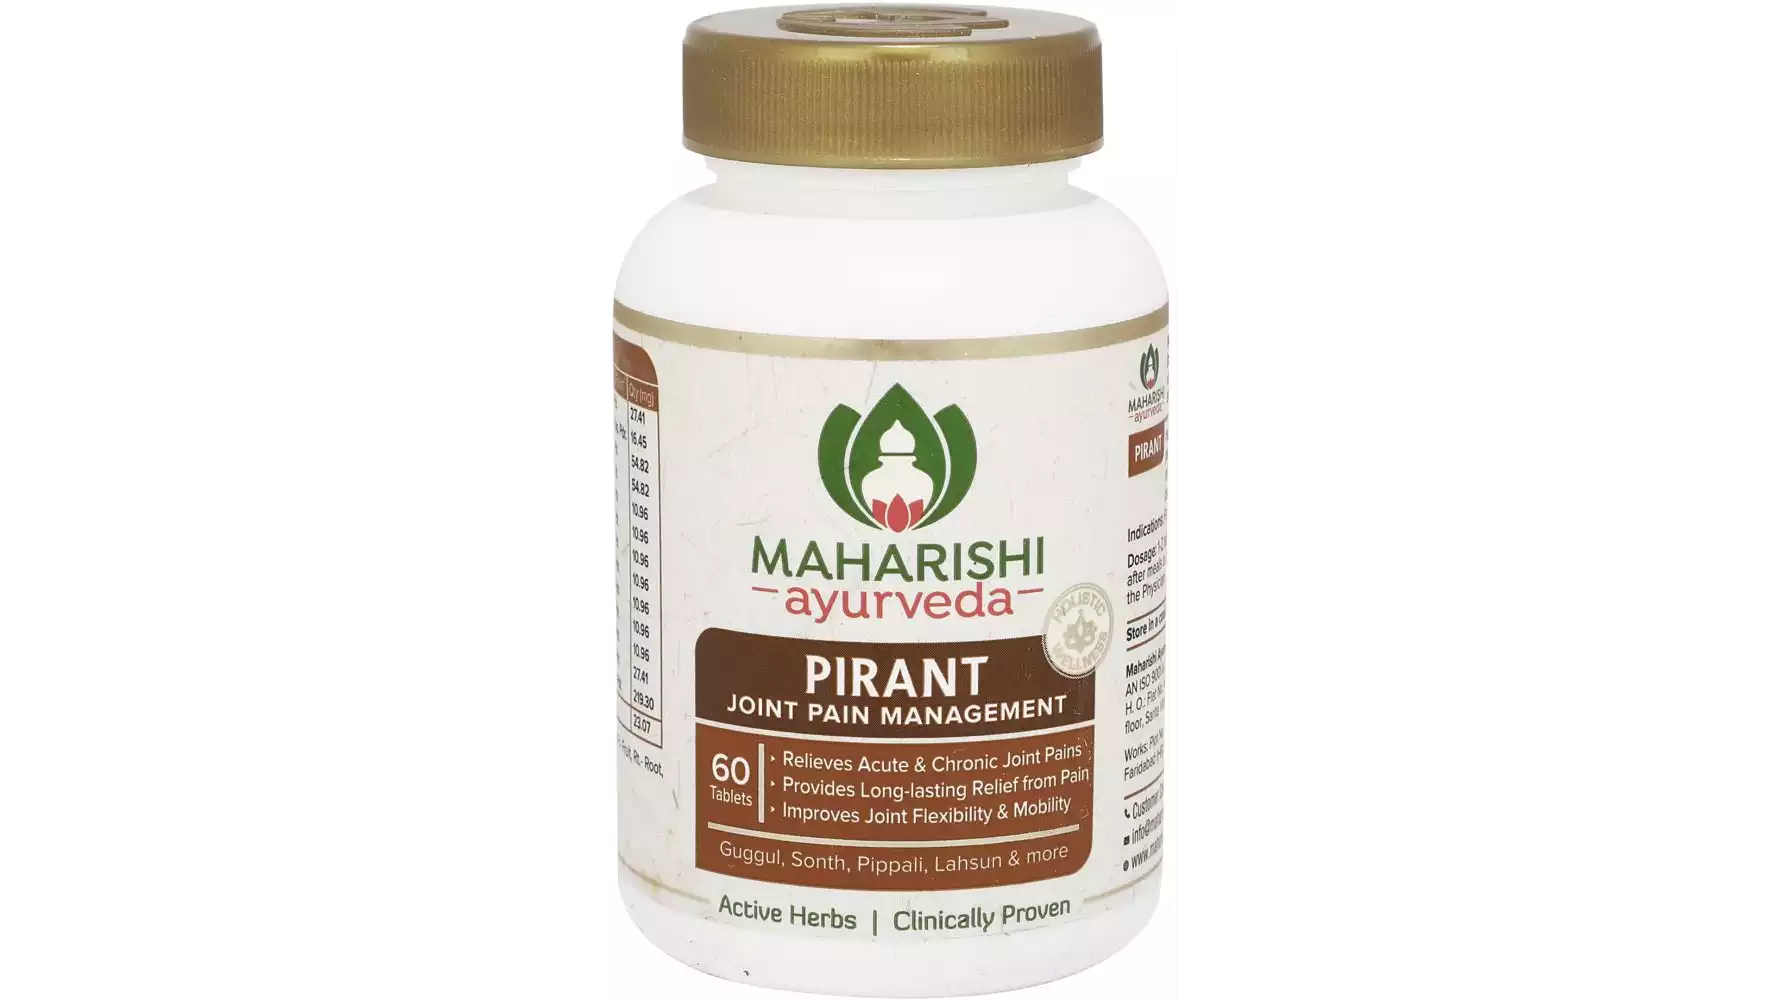 Maharishi Ayurveda Pirant Tablets (60tab)